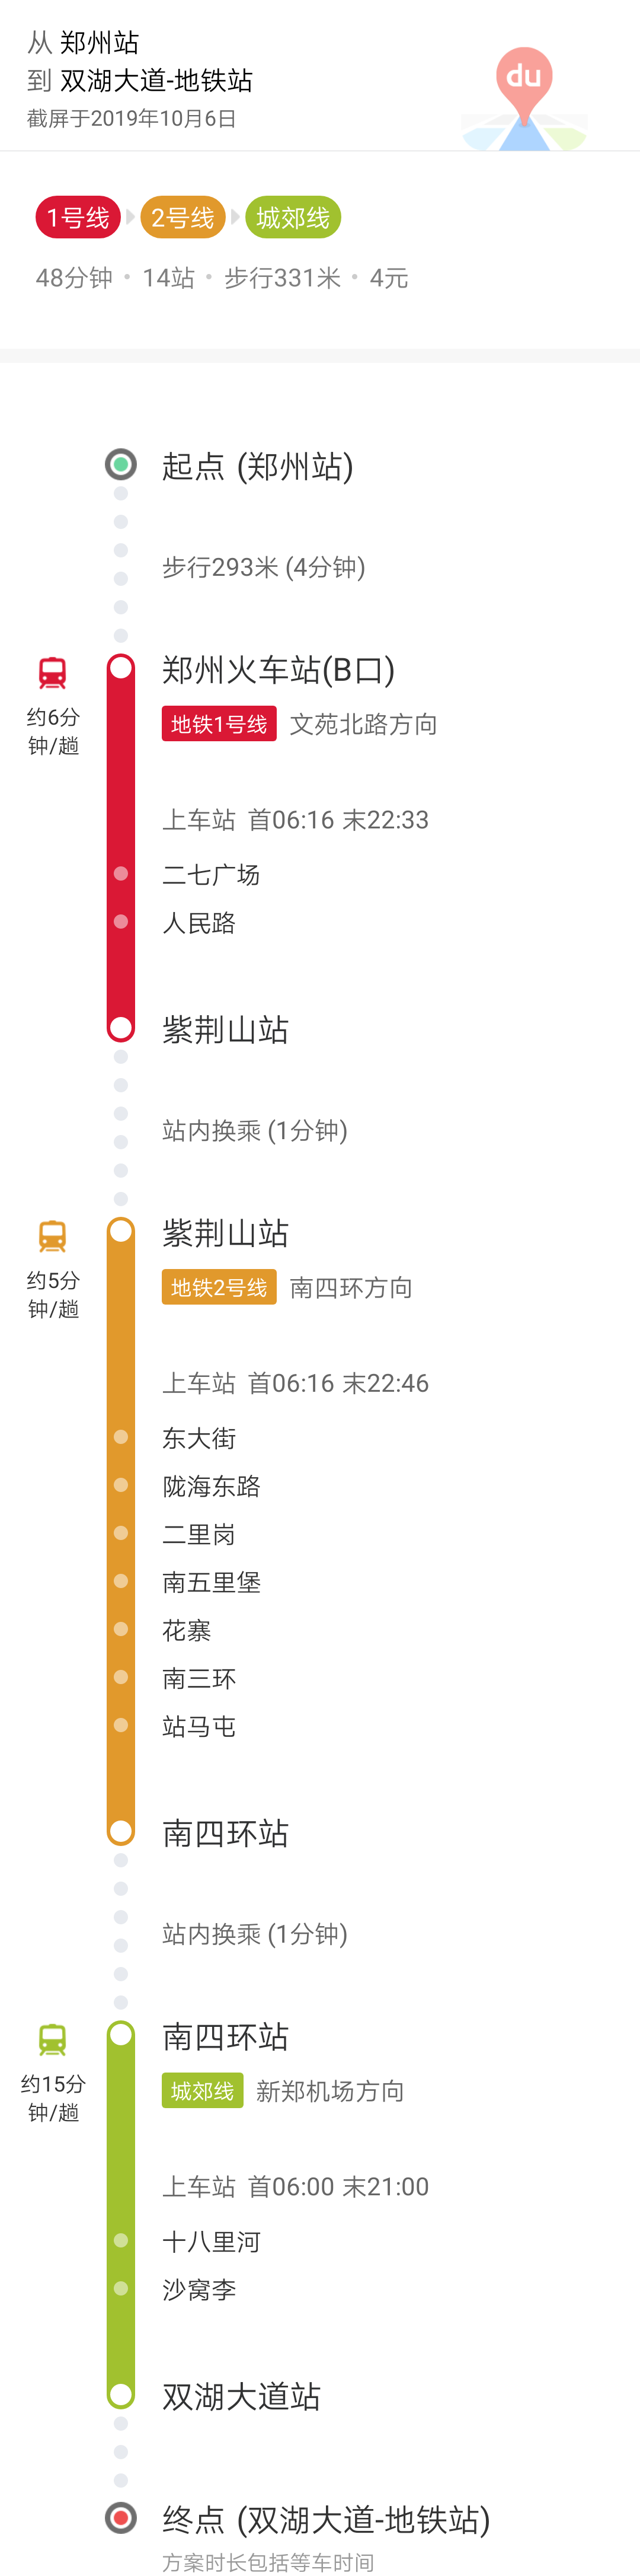 晚上8点郑州火车站到龙湖镇双湖大道还有地铁吗知道的朋友说一下呗谢谢了（新郑龙湖地铁可以直达郑州火车站吗）